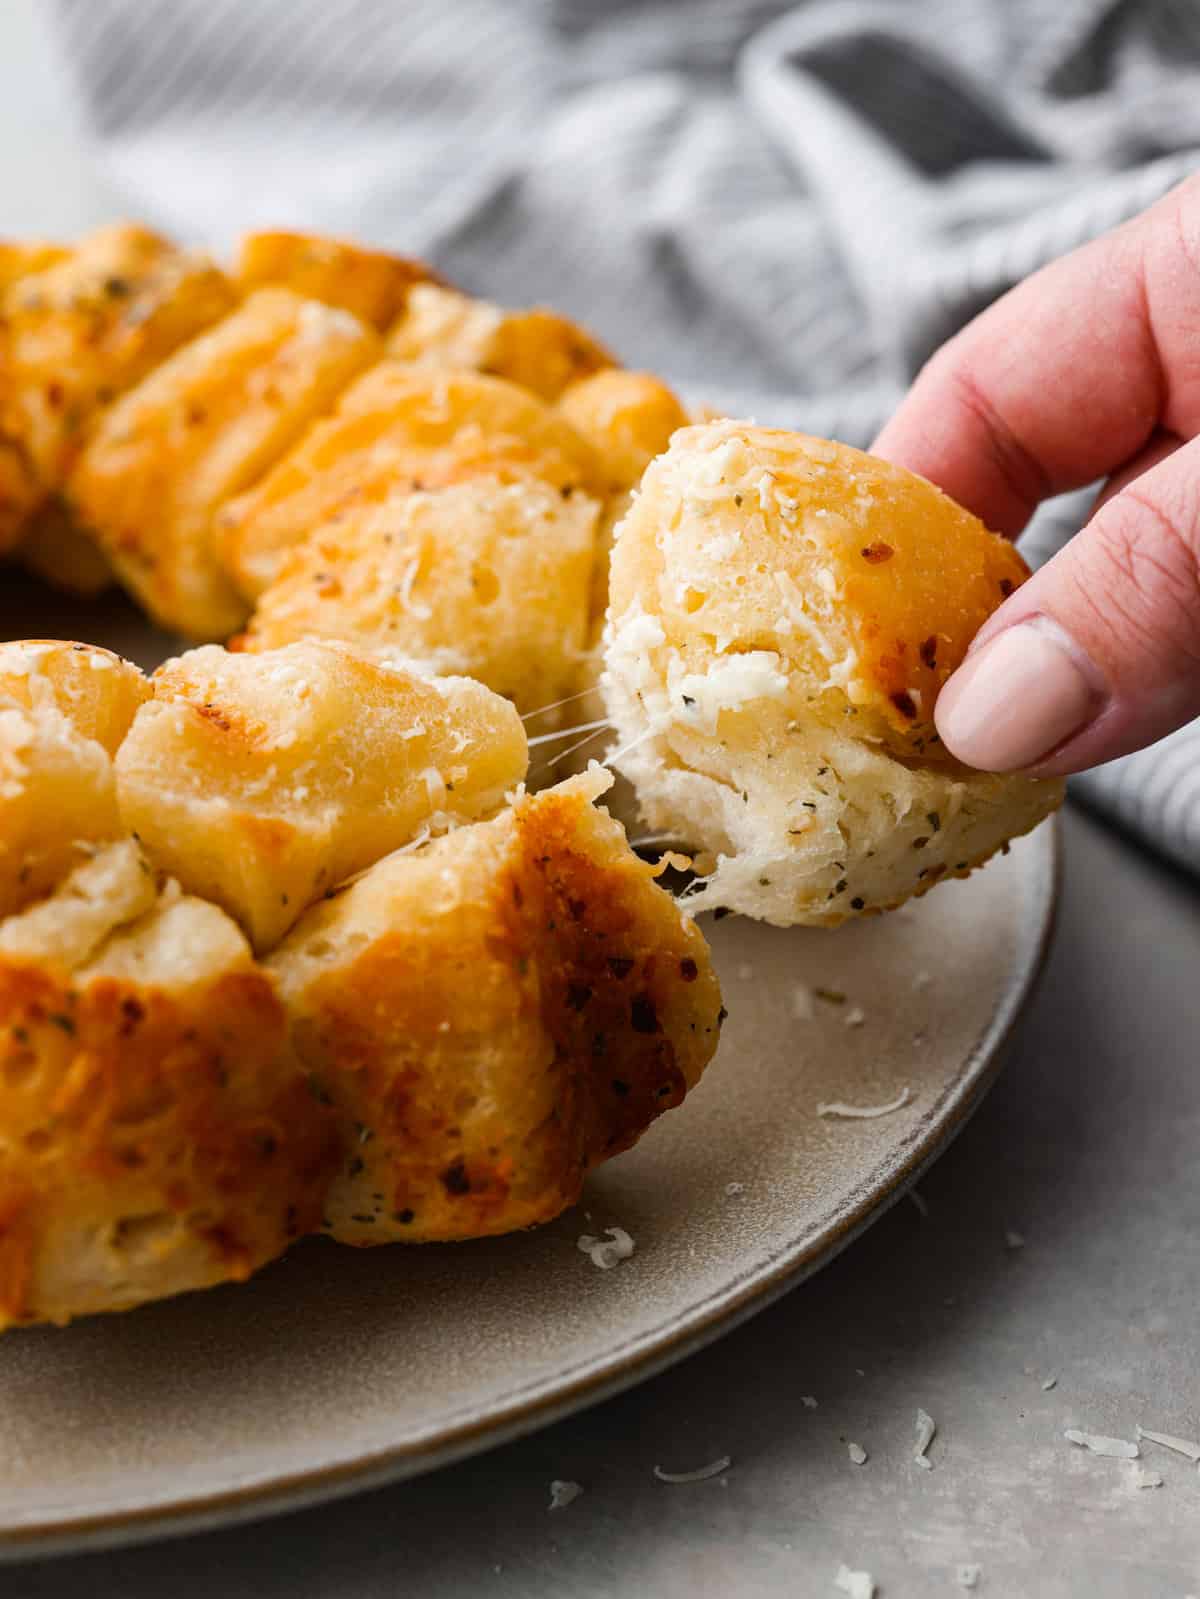 Garlic Parmesan Pull-Apart Bread - Yummy Recipe